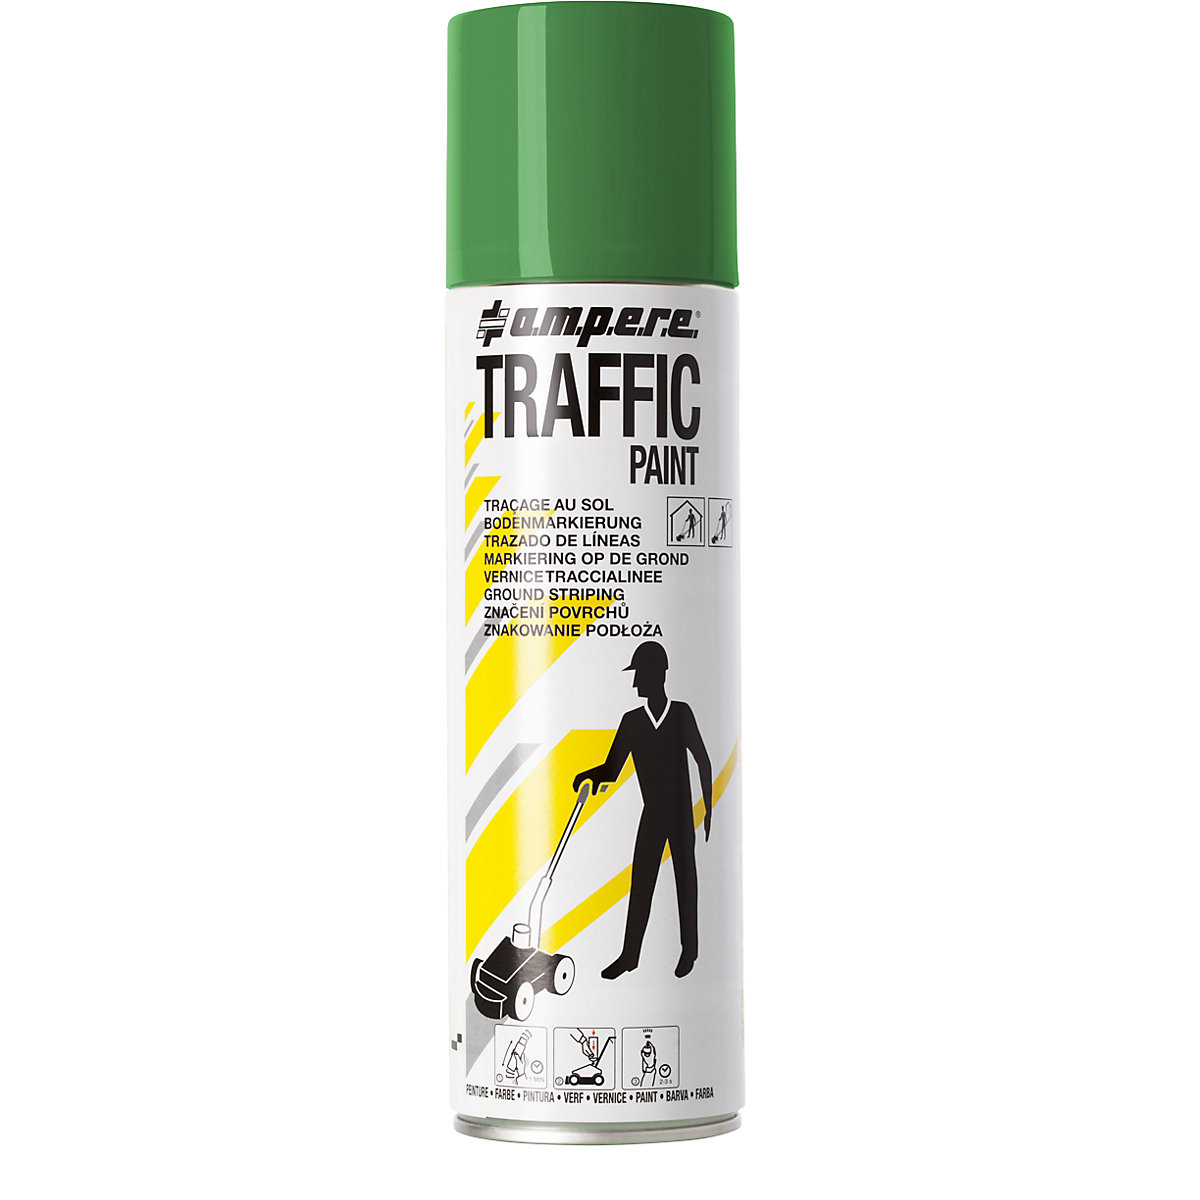 Peinture de marquage Traffic Paint® – Ampere, contenu 500 ml, lot de 12 aérosols, vert-9